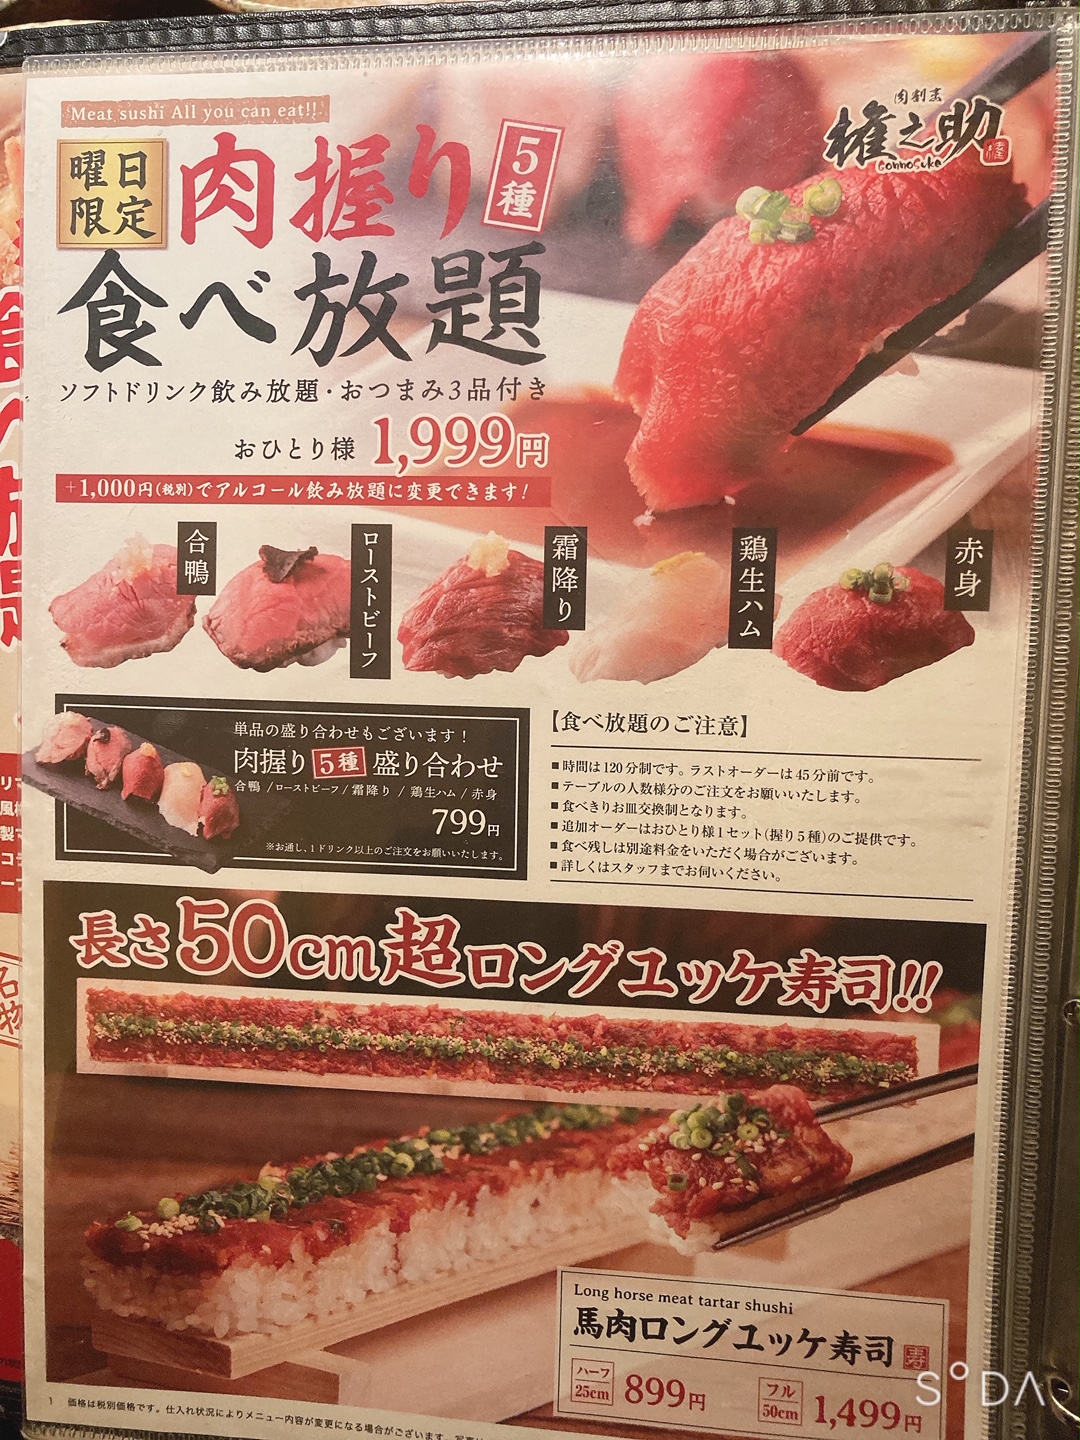 横浜 肉の権之助 食べ放題 2000円で5種類の肉寿司が食べ放題 ソフトドリンク飲み放題付き 食と読書で生きる男